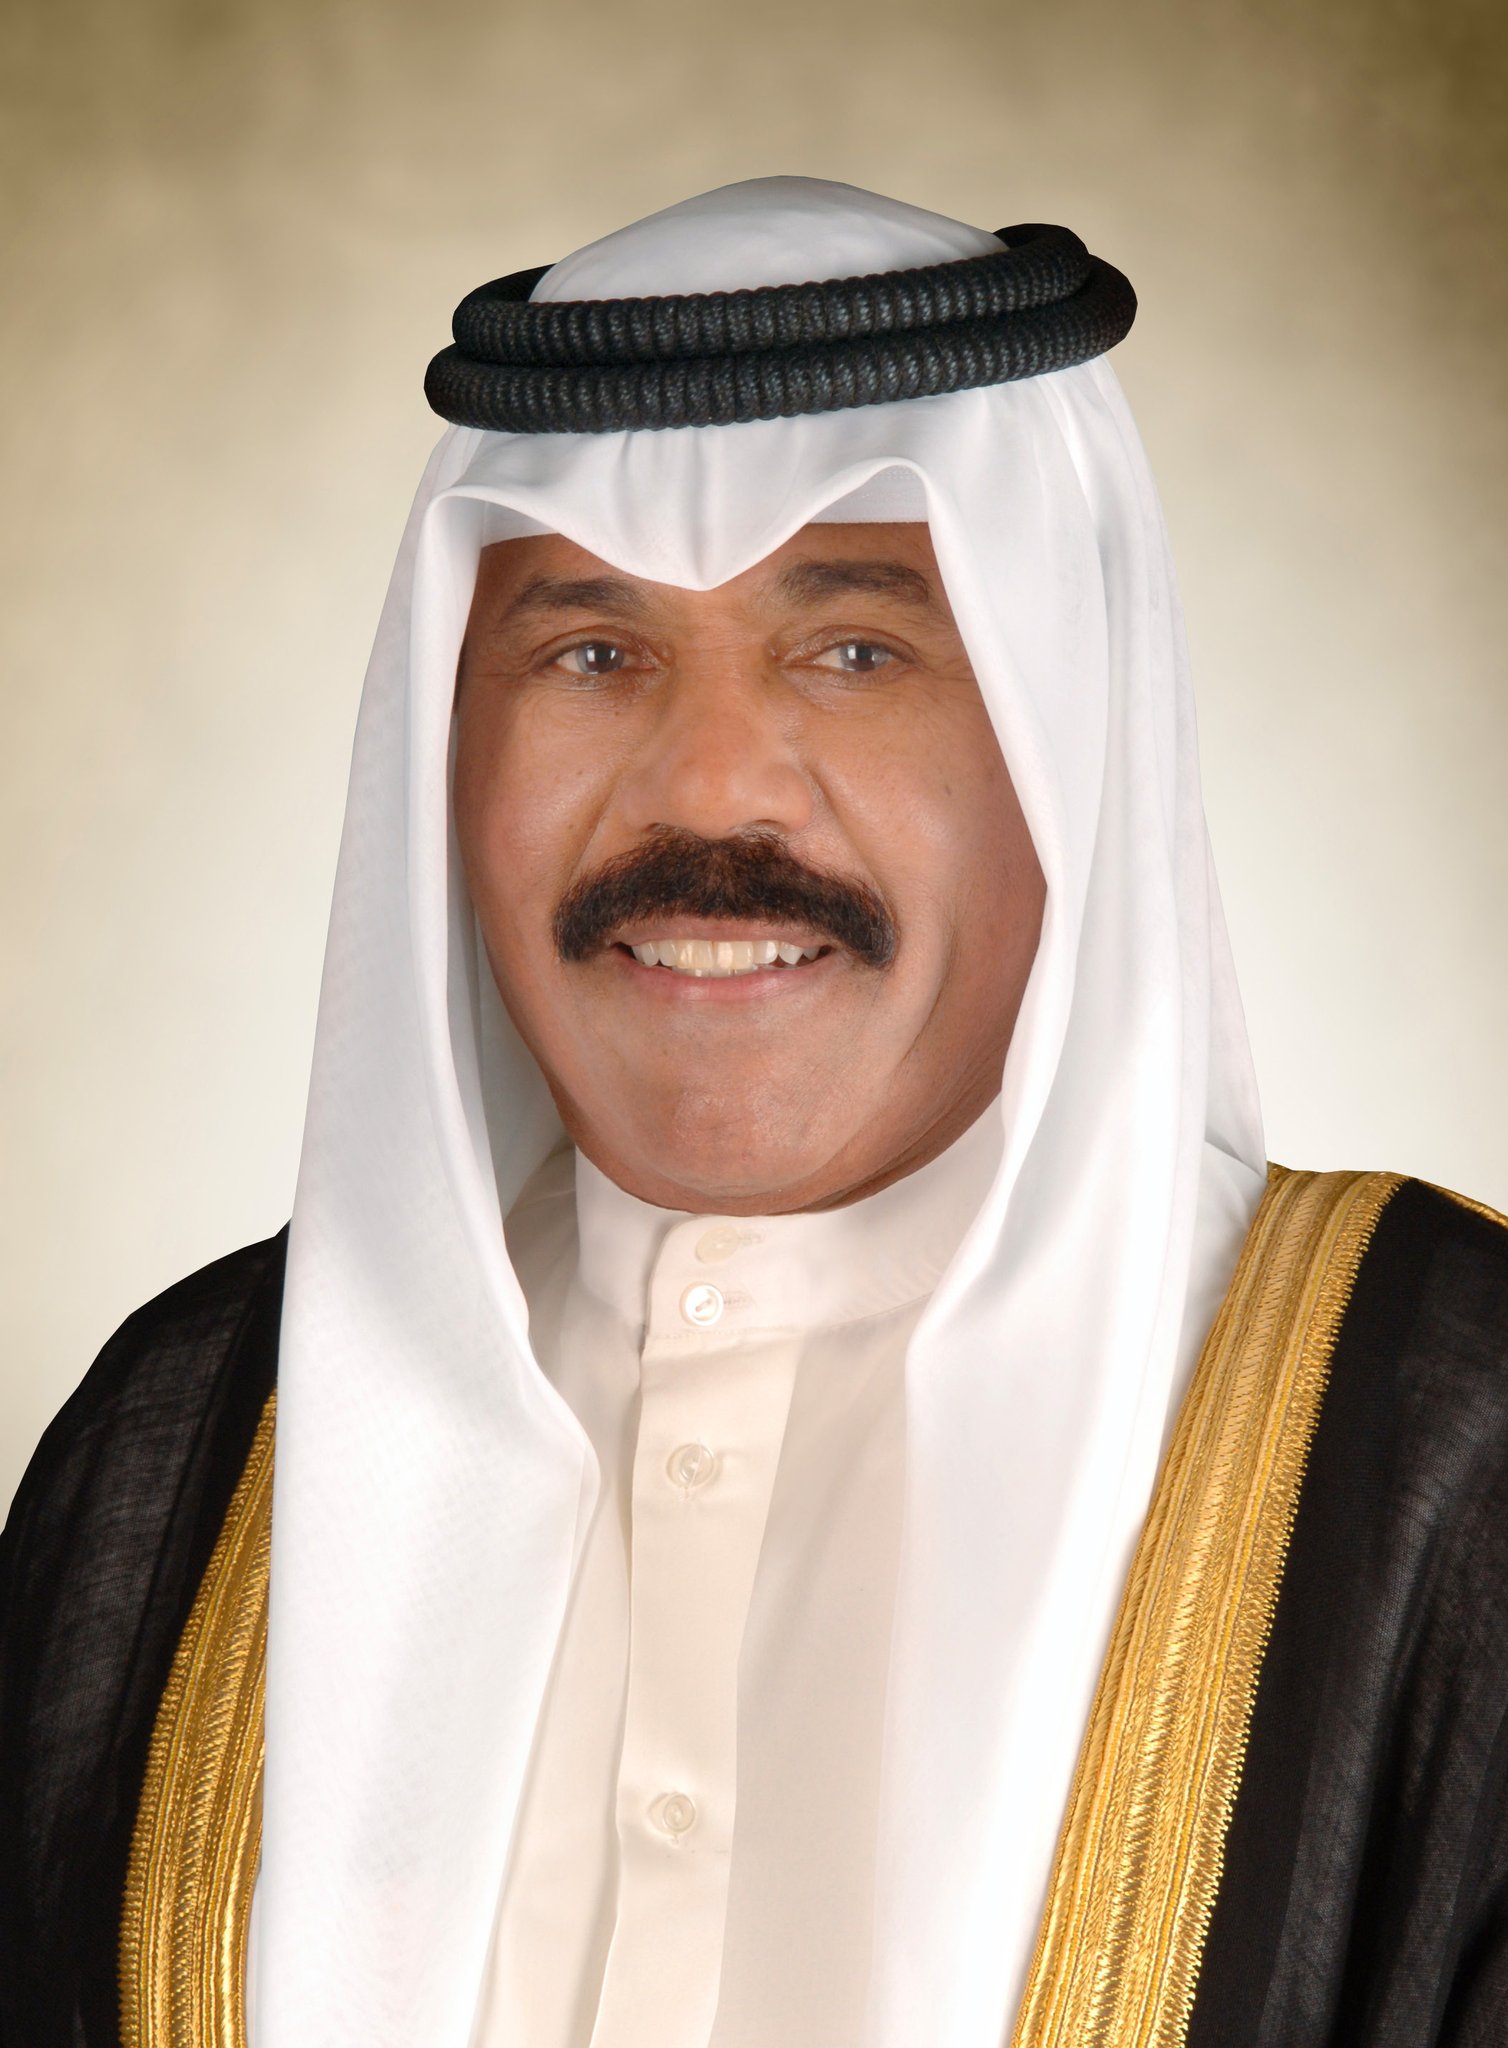 صاحب السمو  يهنئ رئيس الإمارات بمناسبة ذكرى توليه مقاليد الحكم